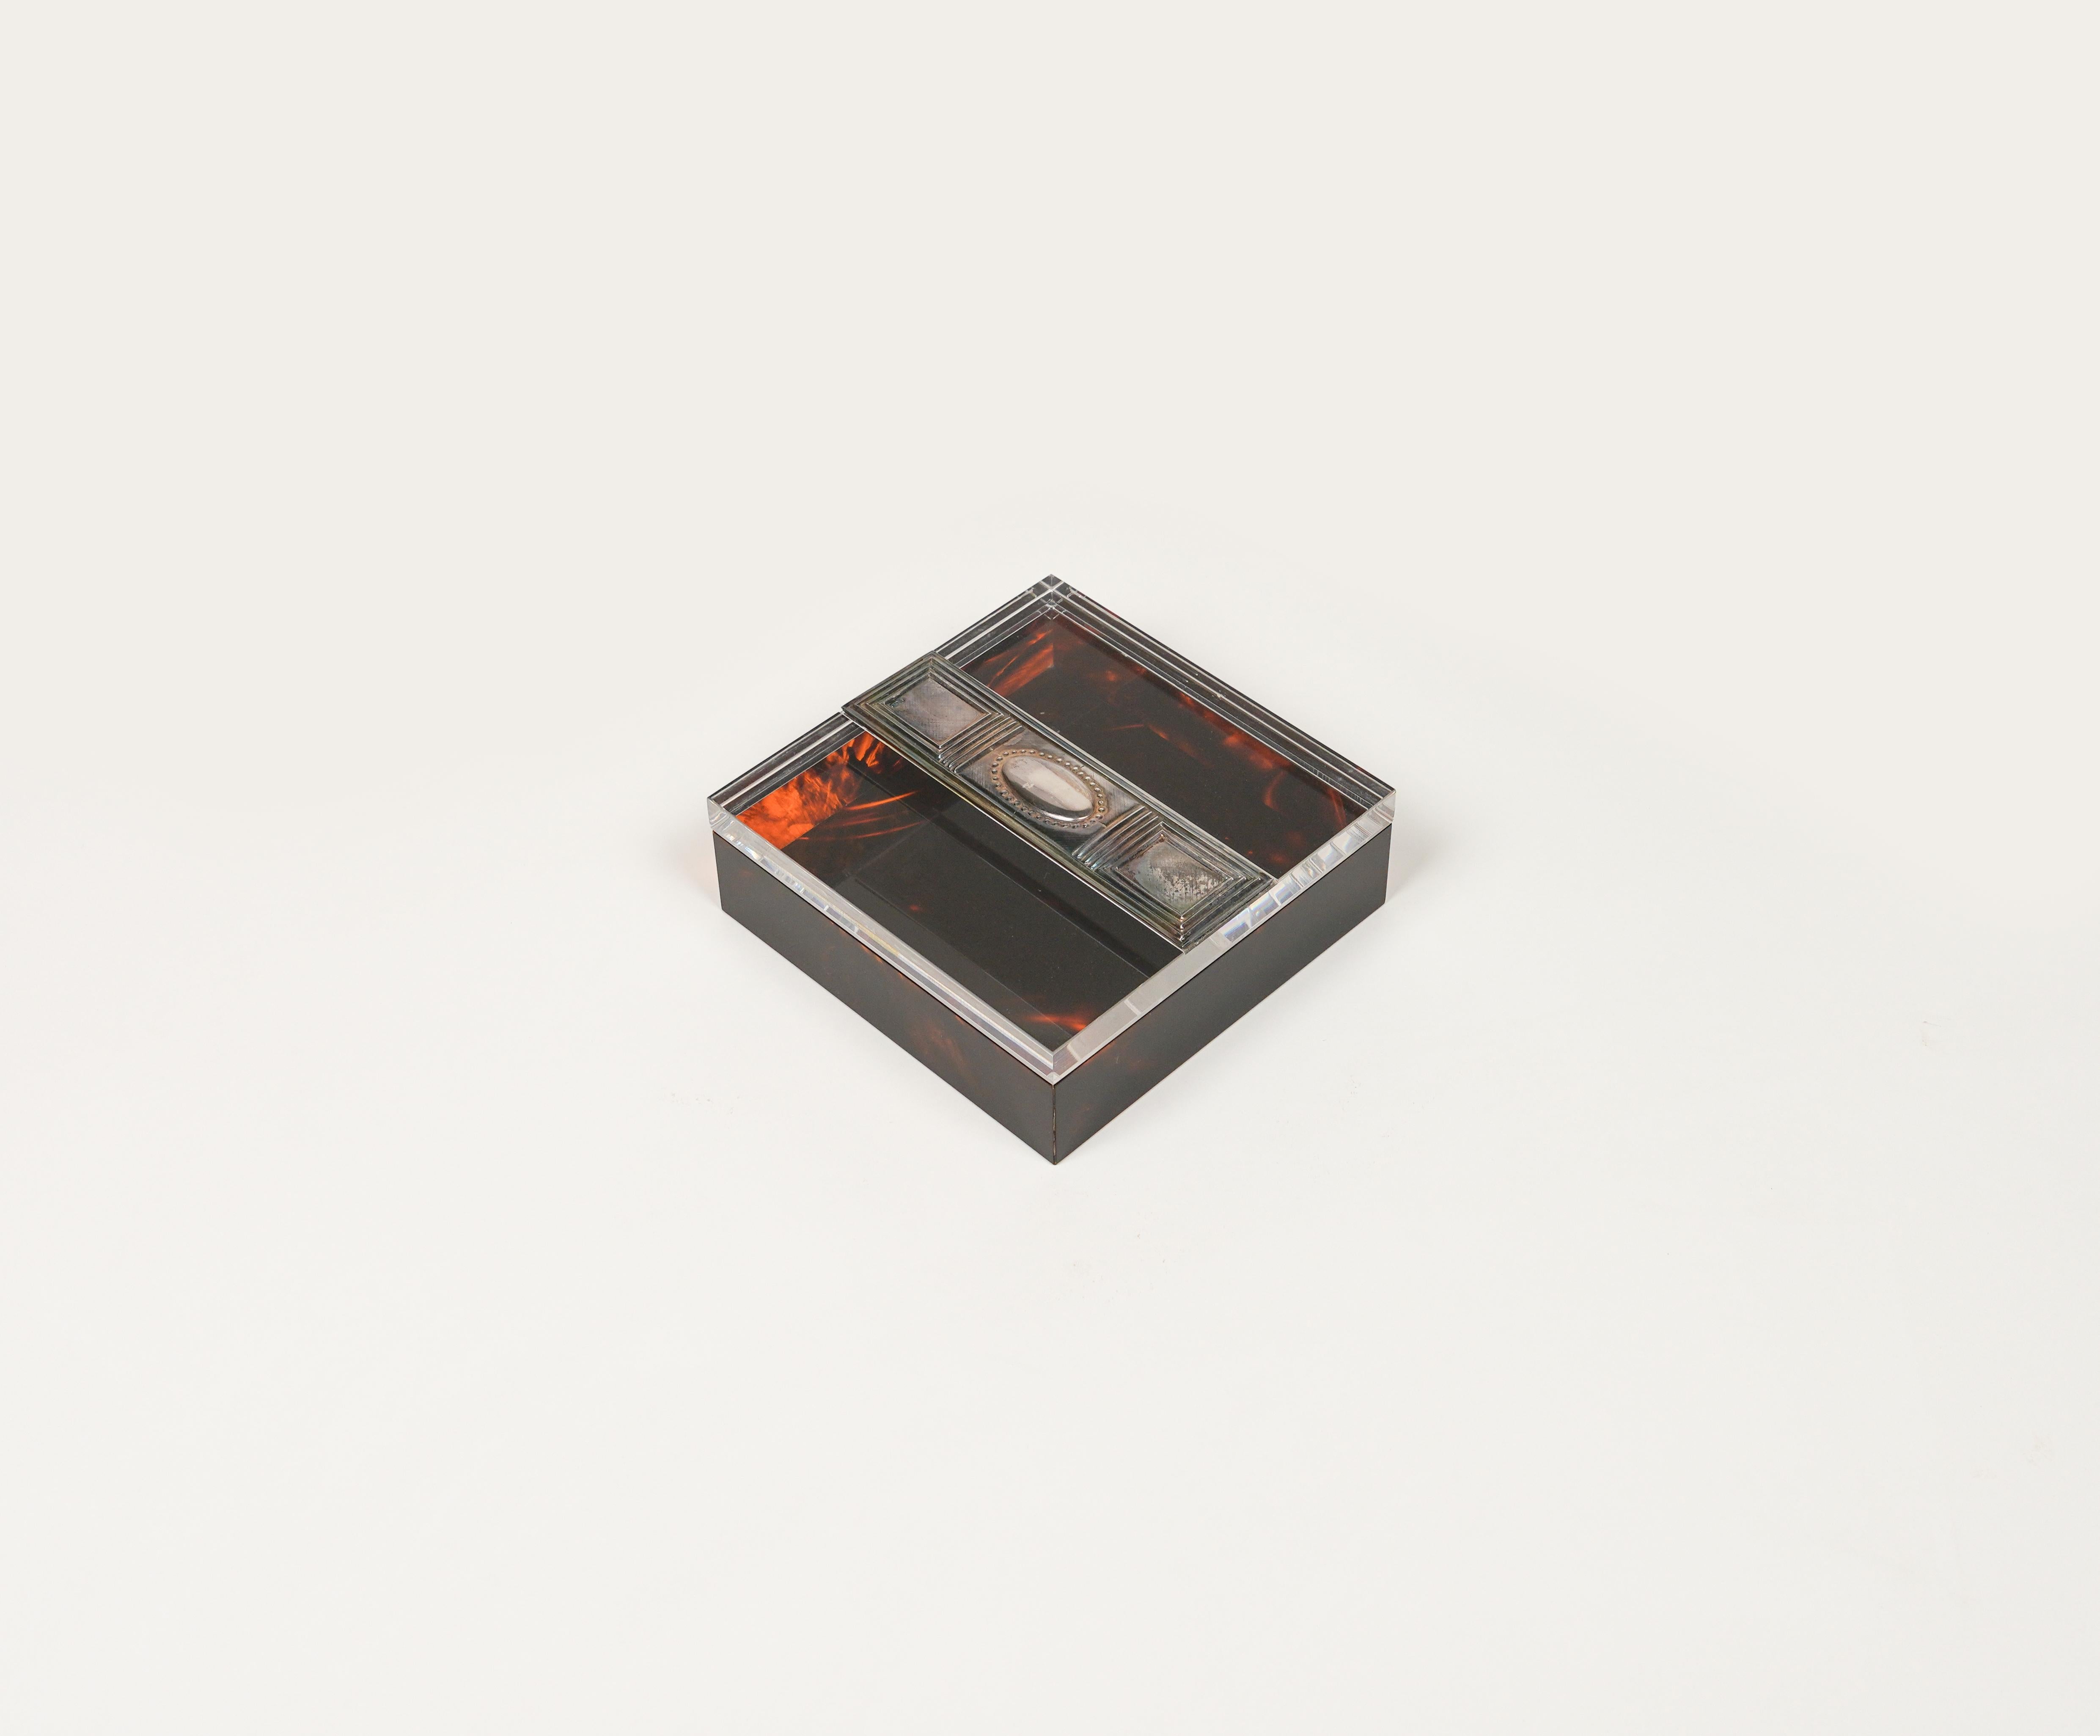 Boîte à bijoux décorative carrée en lucite effet écaille et argent dans le style Christian Dior.

Fabriqué en Italie dans les années 1980.

Objet de bureau parfait ou idée de cadeau.